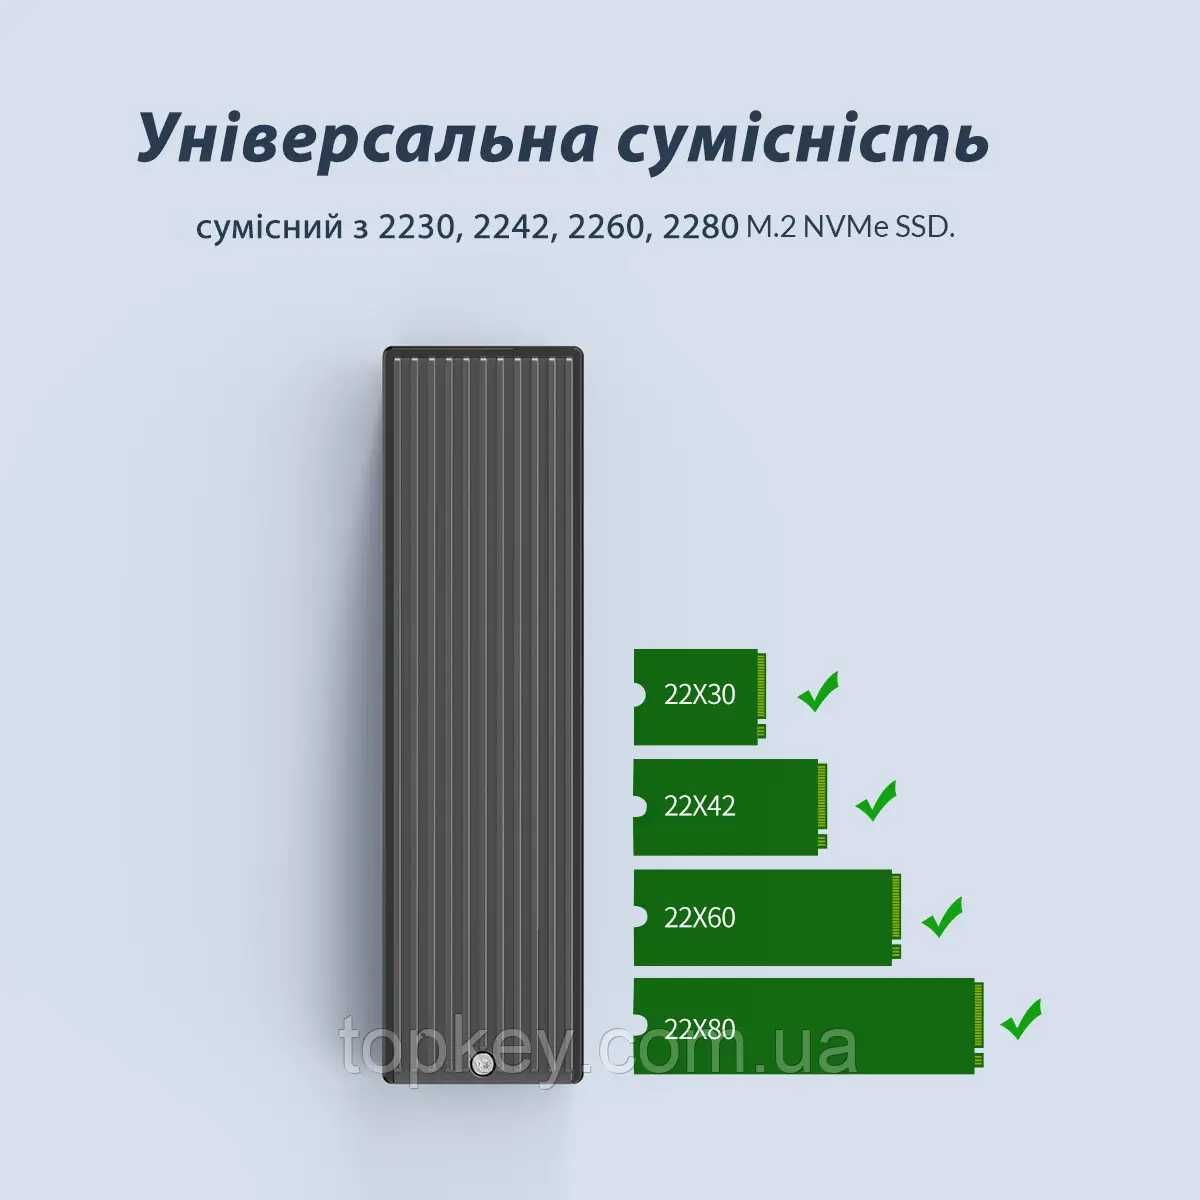 Внешний карман Orico M2PV-C3 для M.2 SSD NVMe USB 3.1 Type-C адаптер